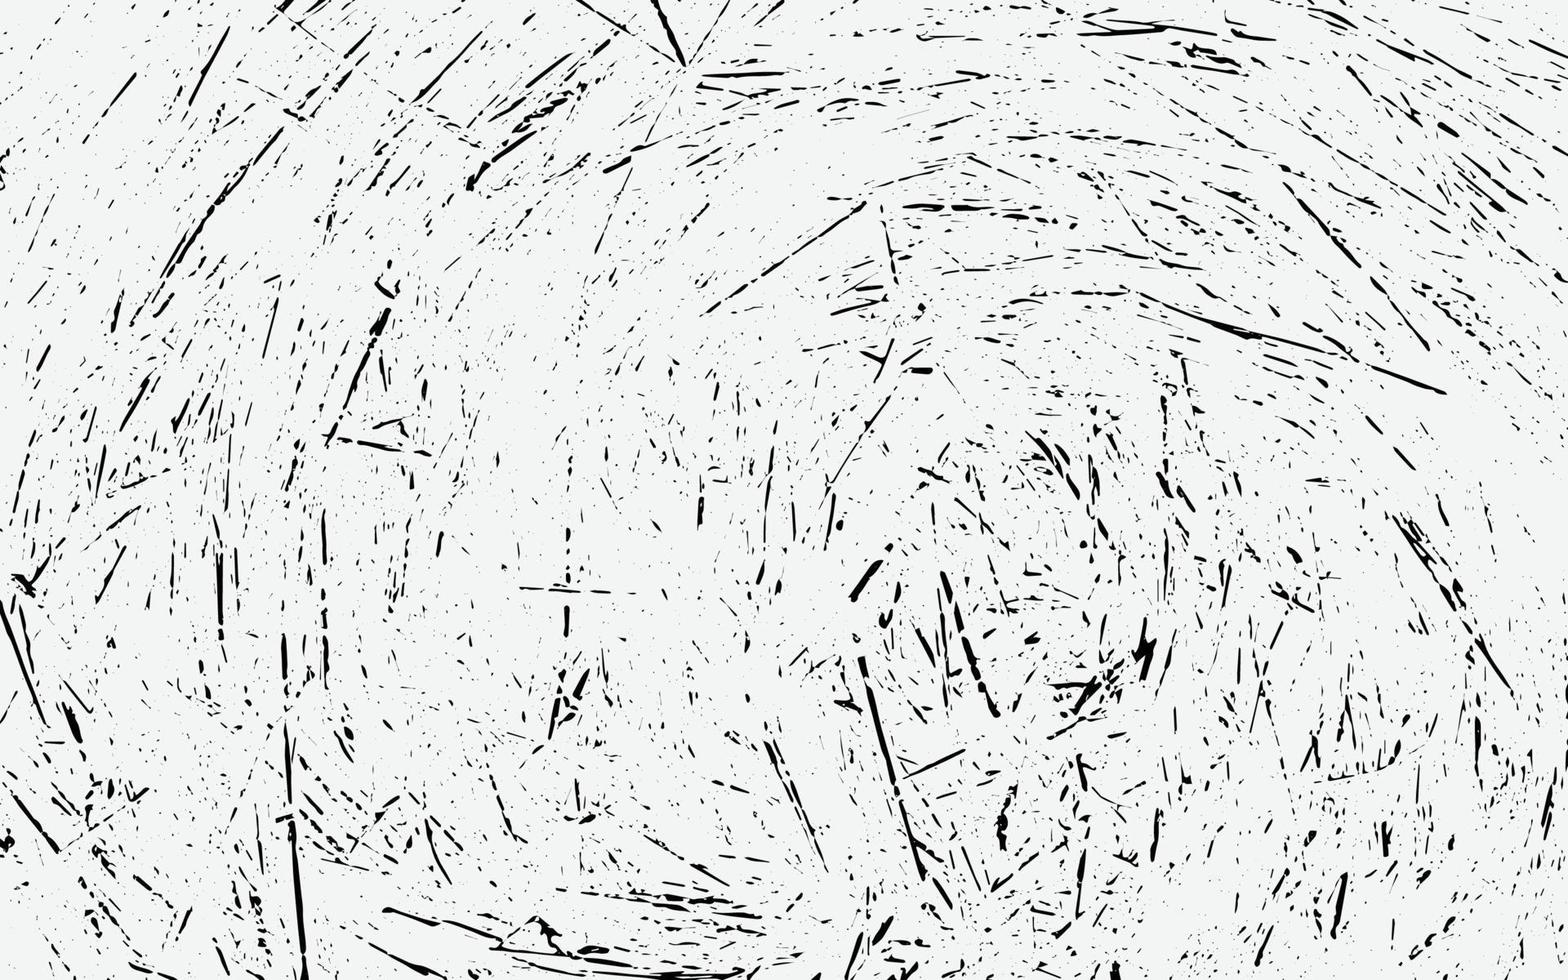 rayé grunge urbain fond texture vecteur poussière superposition détresse granuleux effet grungy toile de fond en détresse illustration vectorielle isolé noir sur fond blanc